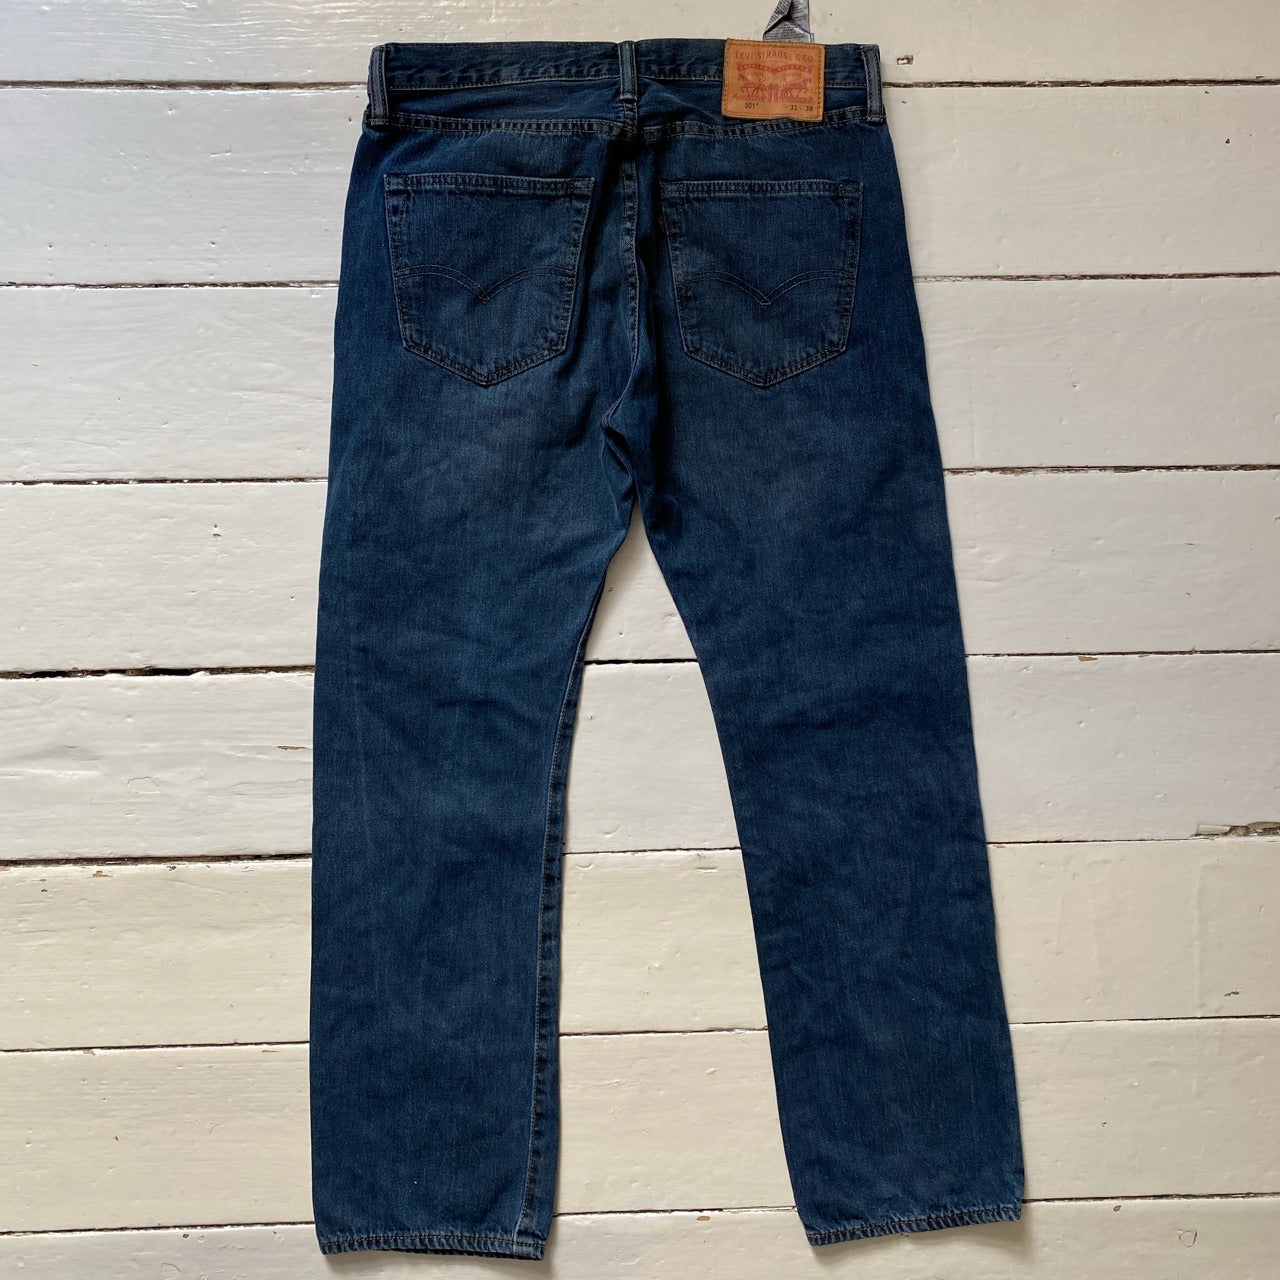 Levis 501 Blue Jeans (31/30)